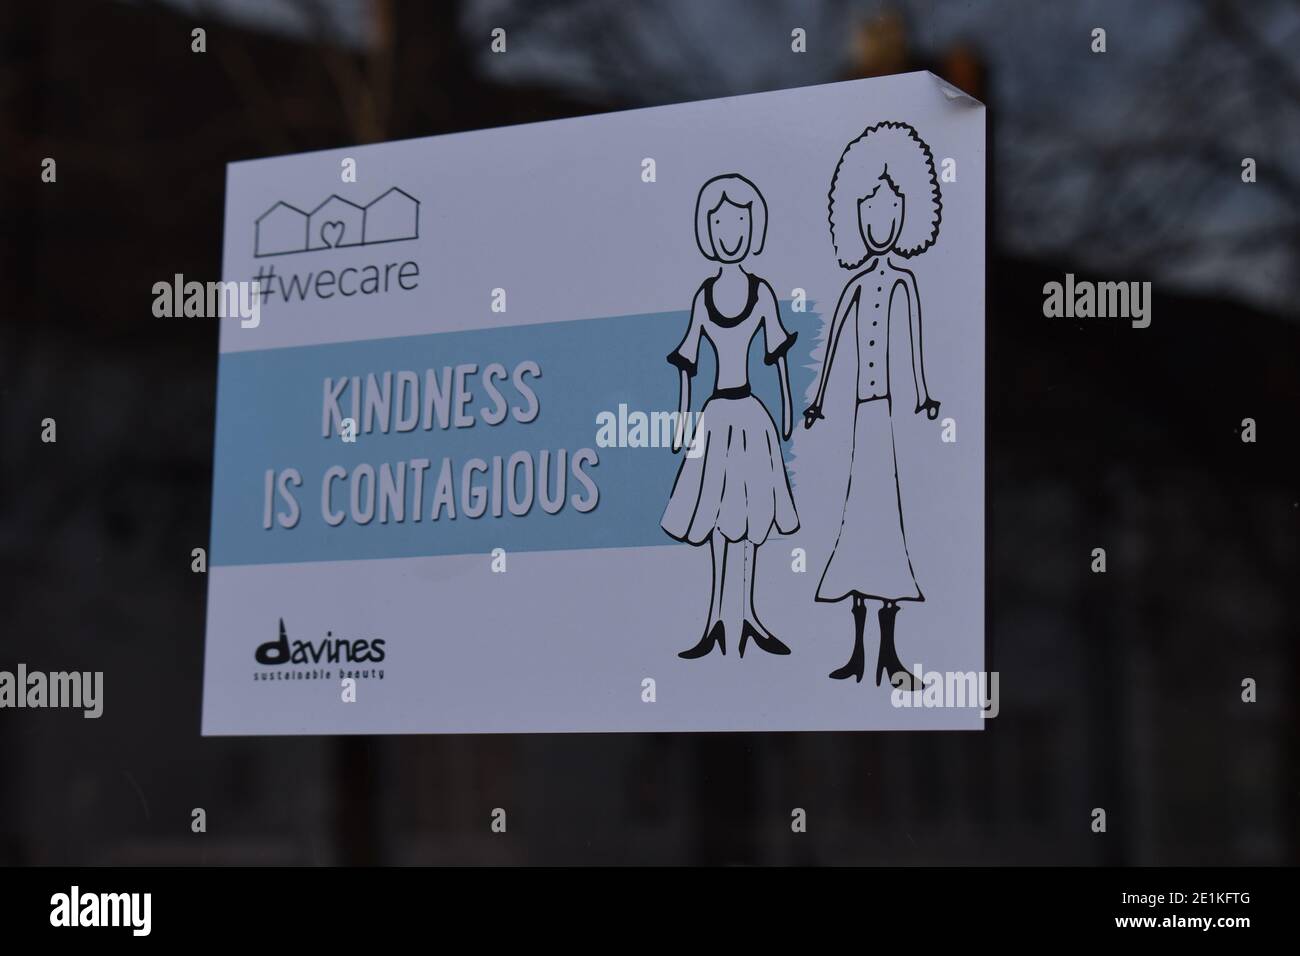 Firme en una ventana de la tienda: "La amabilidad es contagiosa". Foto de stock